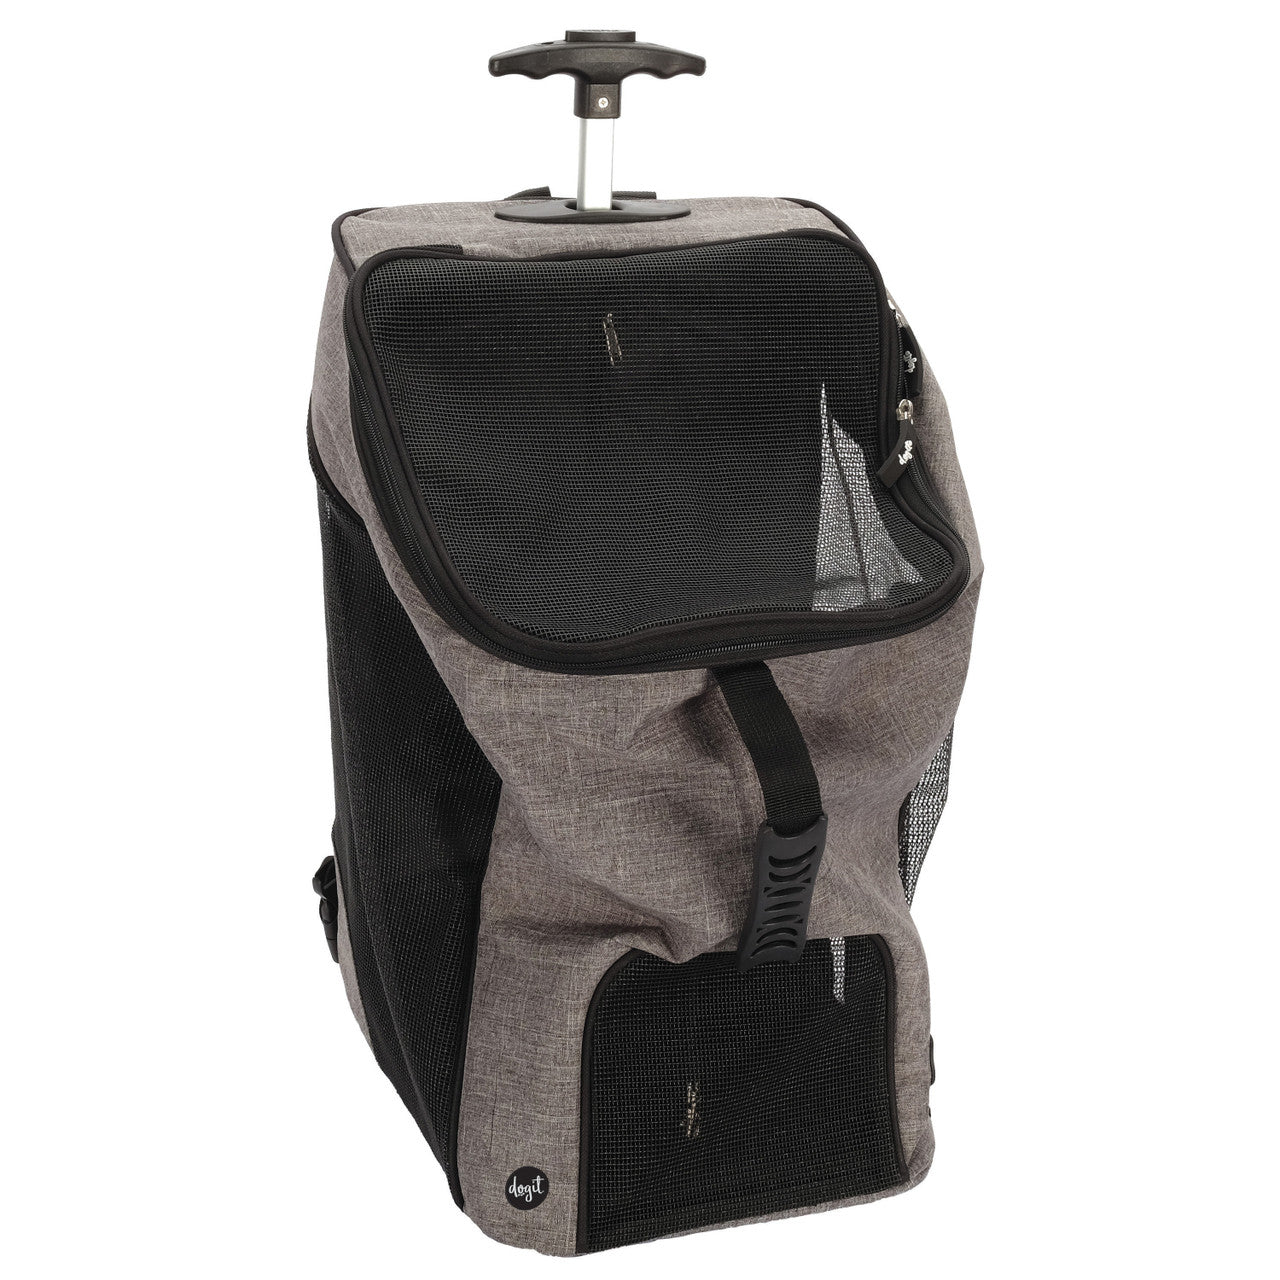 Dogit Explorer Wheeled Backpack Carrier, Gray/Black 022517775653